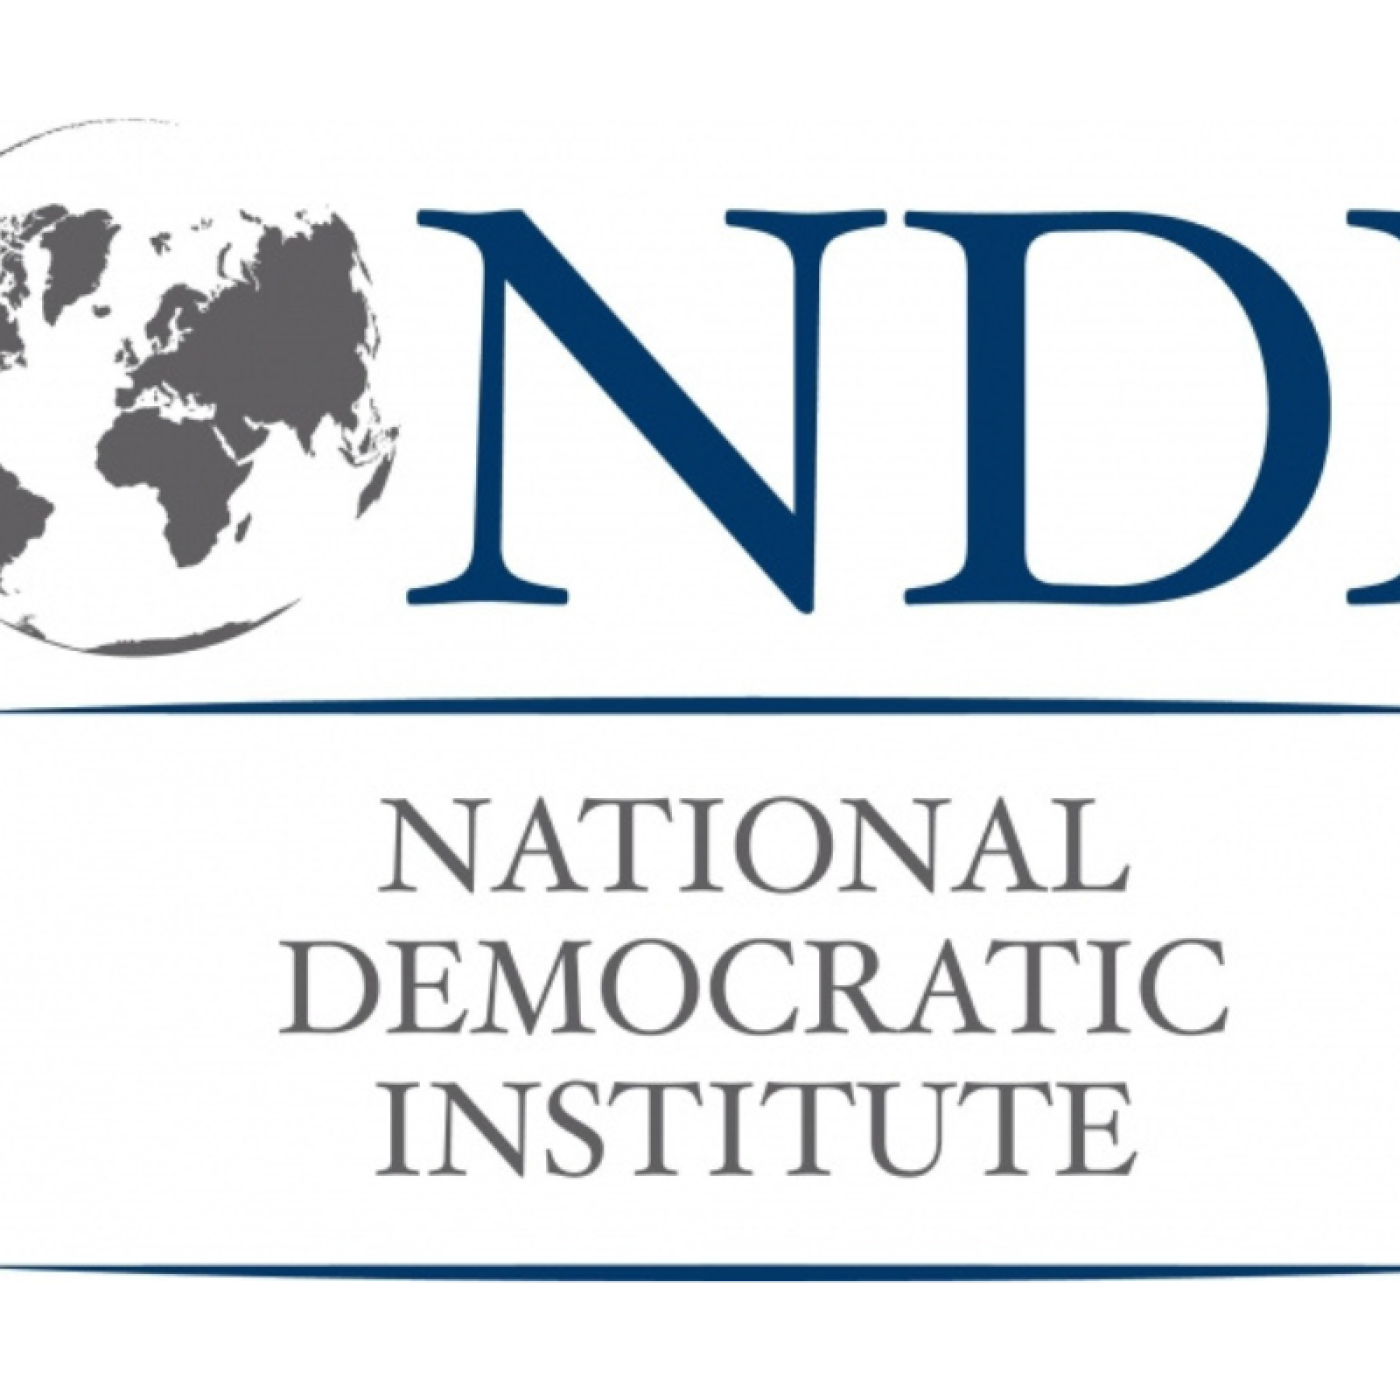 NDI logo